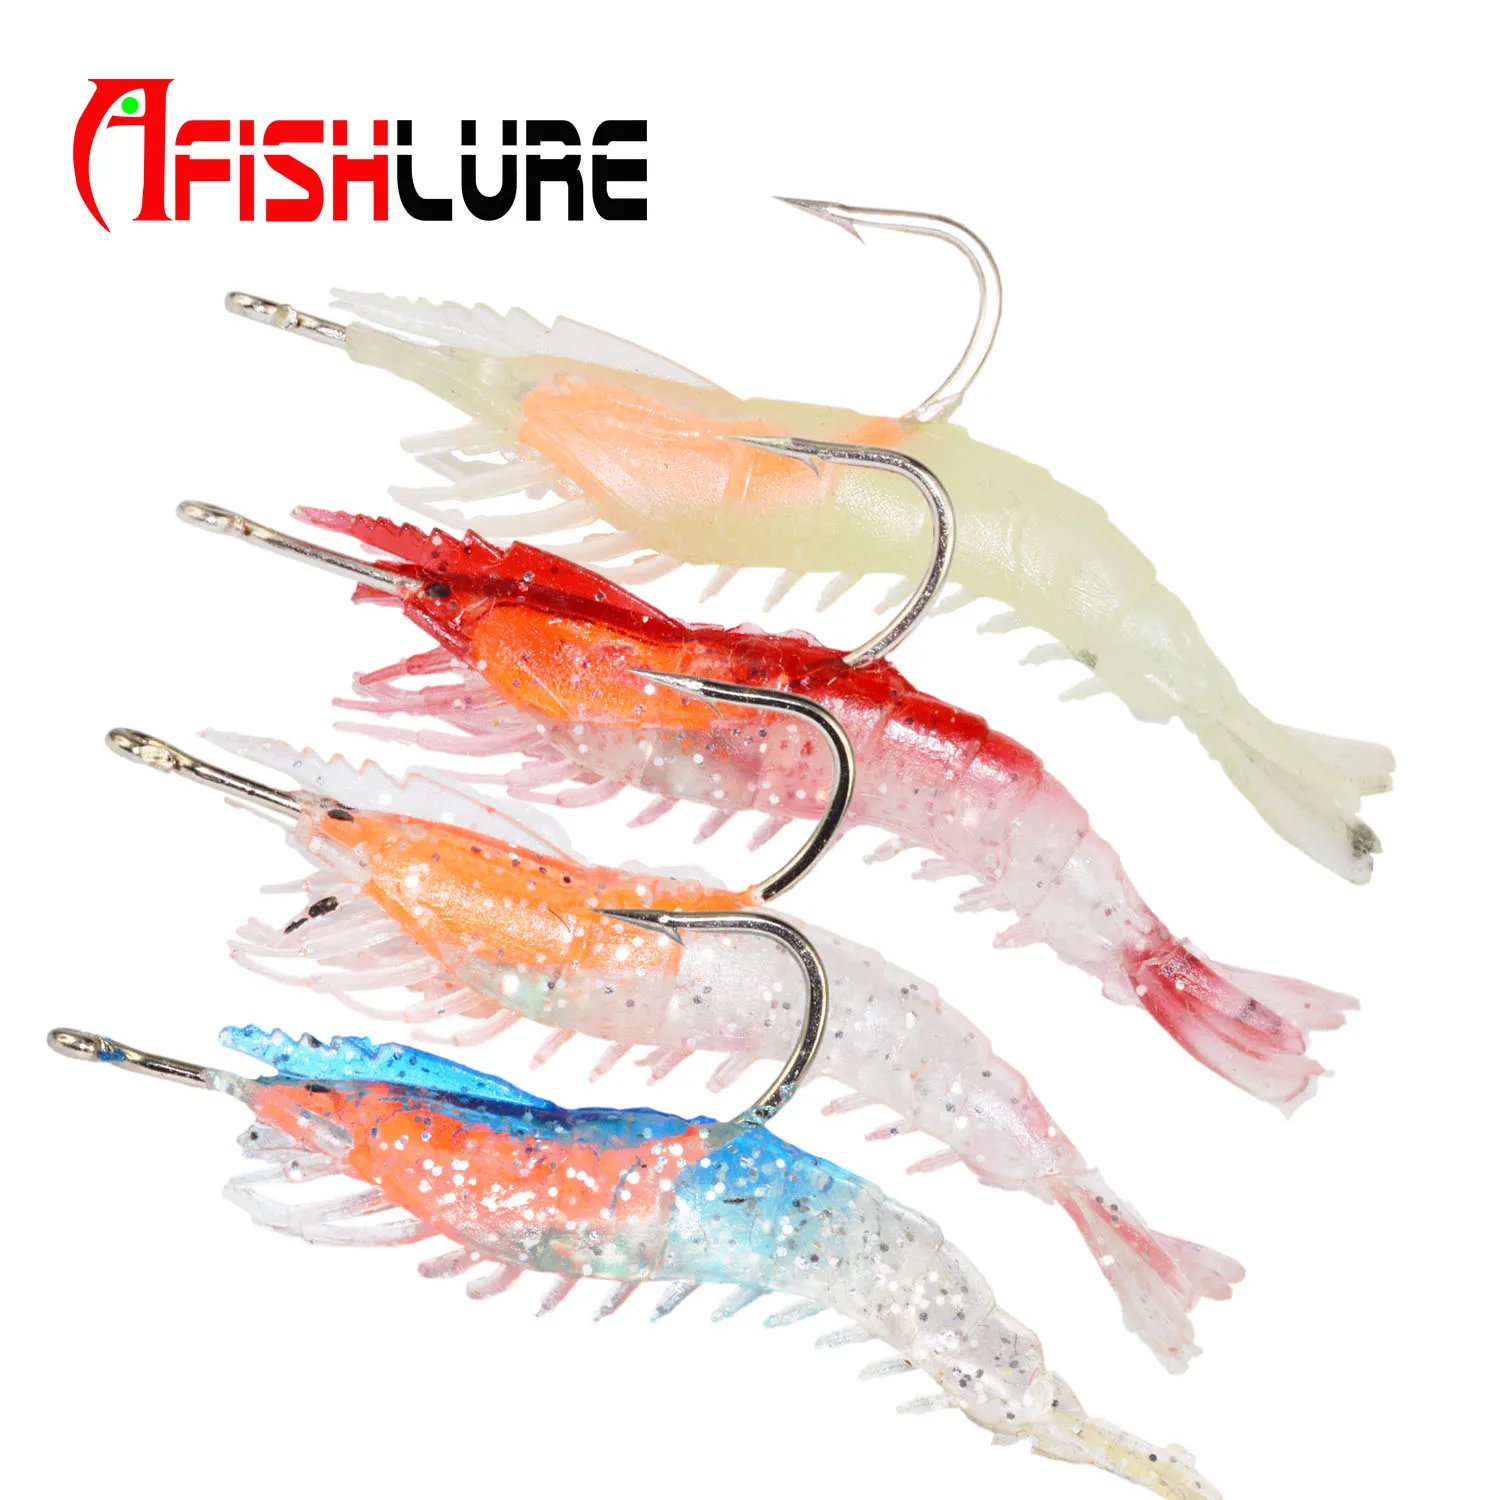 

Soft Shrimp Fishing Lures Artificial Shrimp Baits 3g/6cm luminous Soft Lure Bionic Bait With Lead Hook, 4 colors